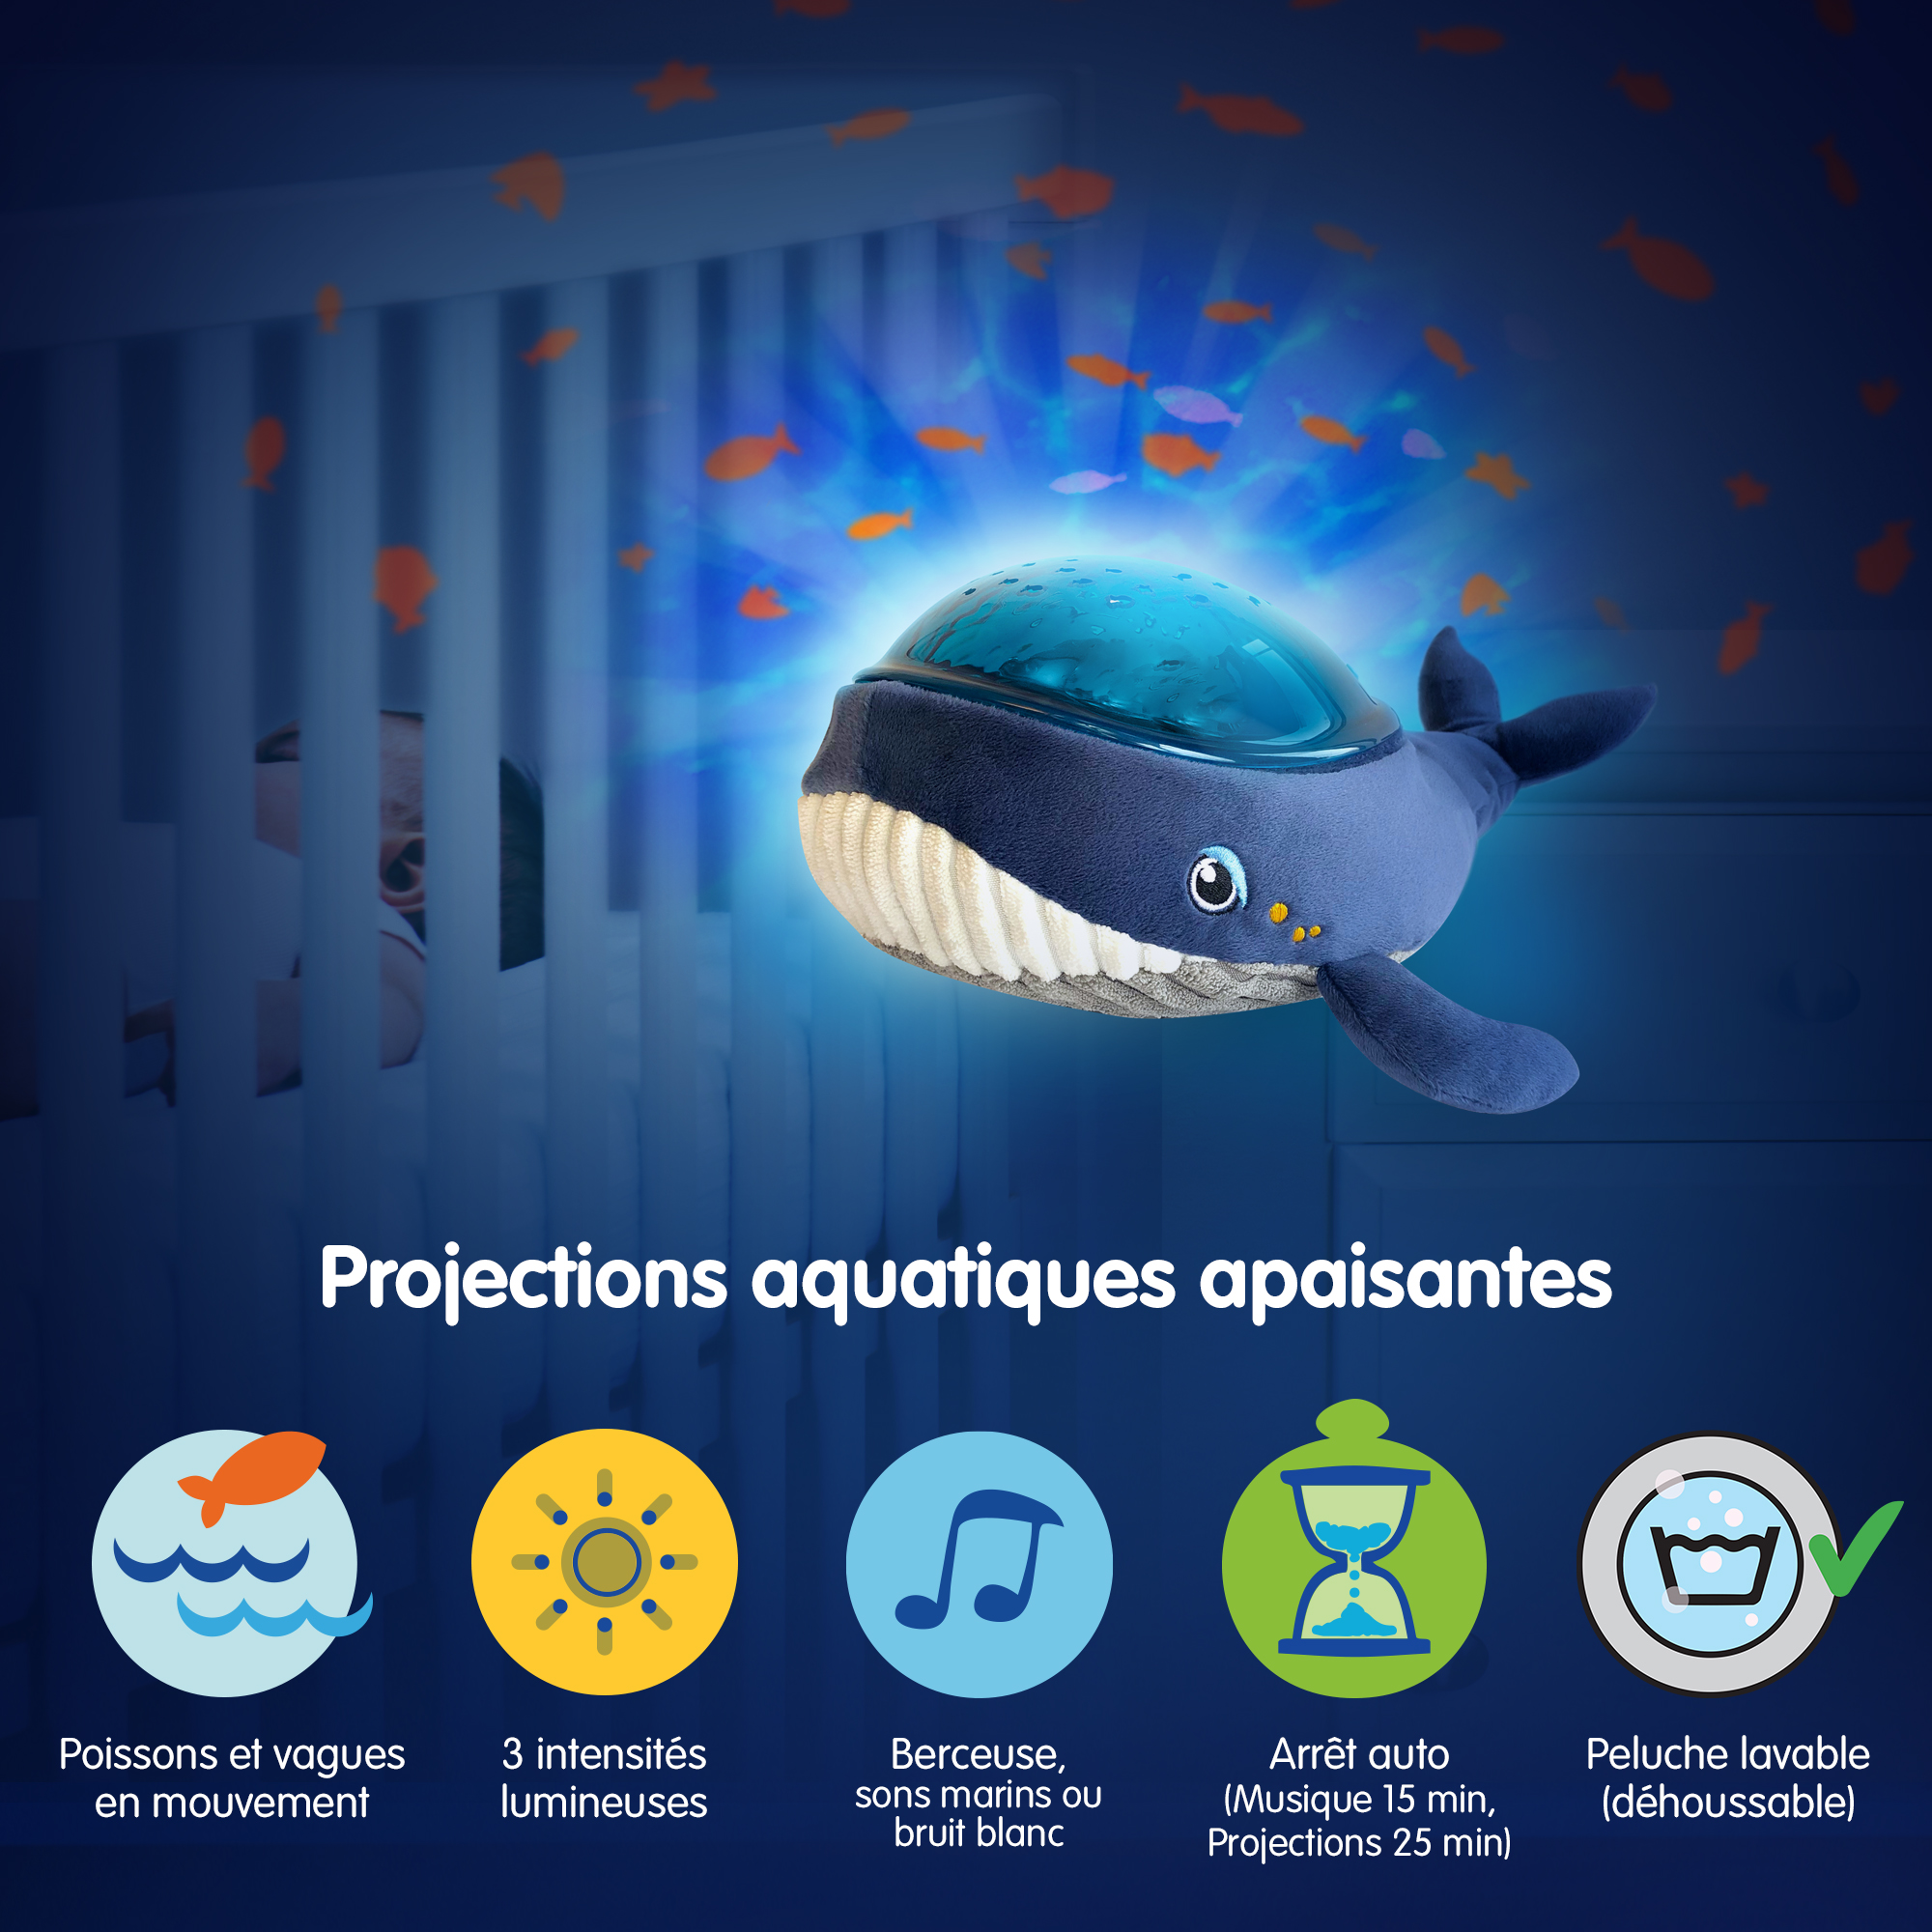 Veilleuse projecteur dynamique Baleine Aquadream Bleu de Pabobo